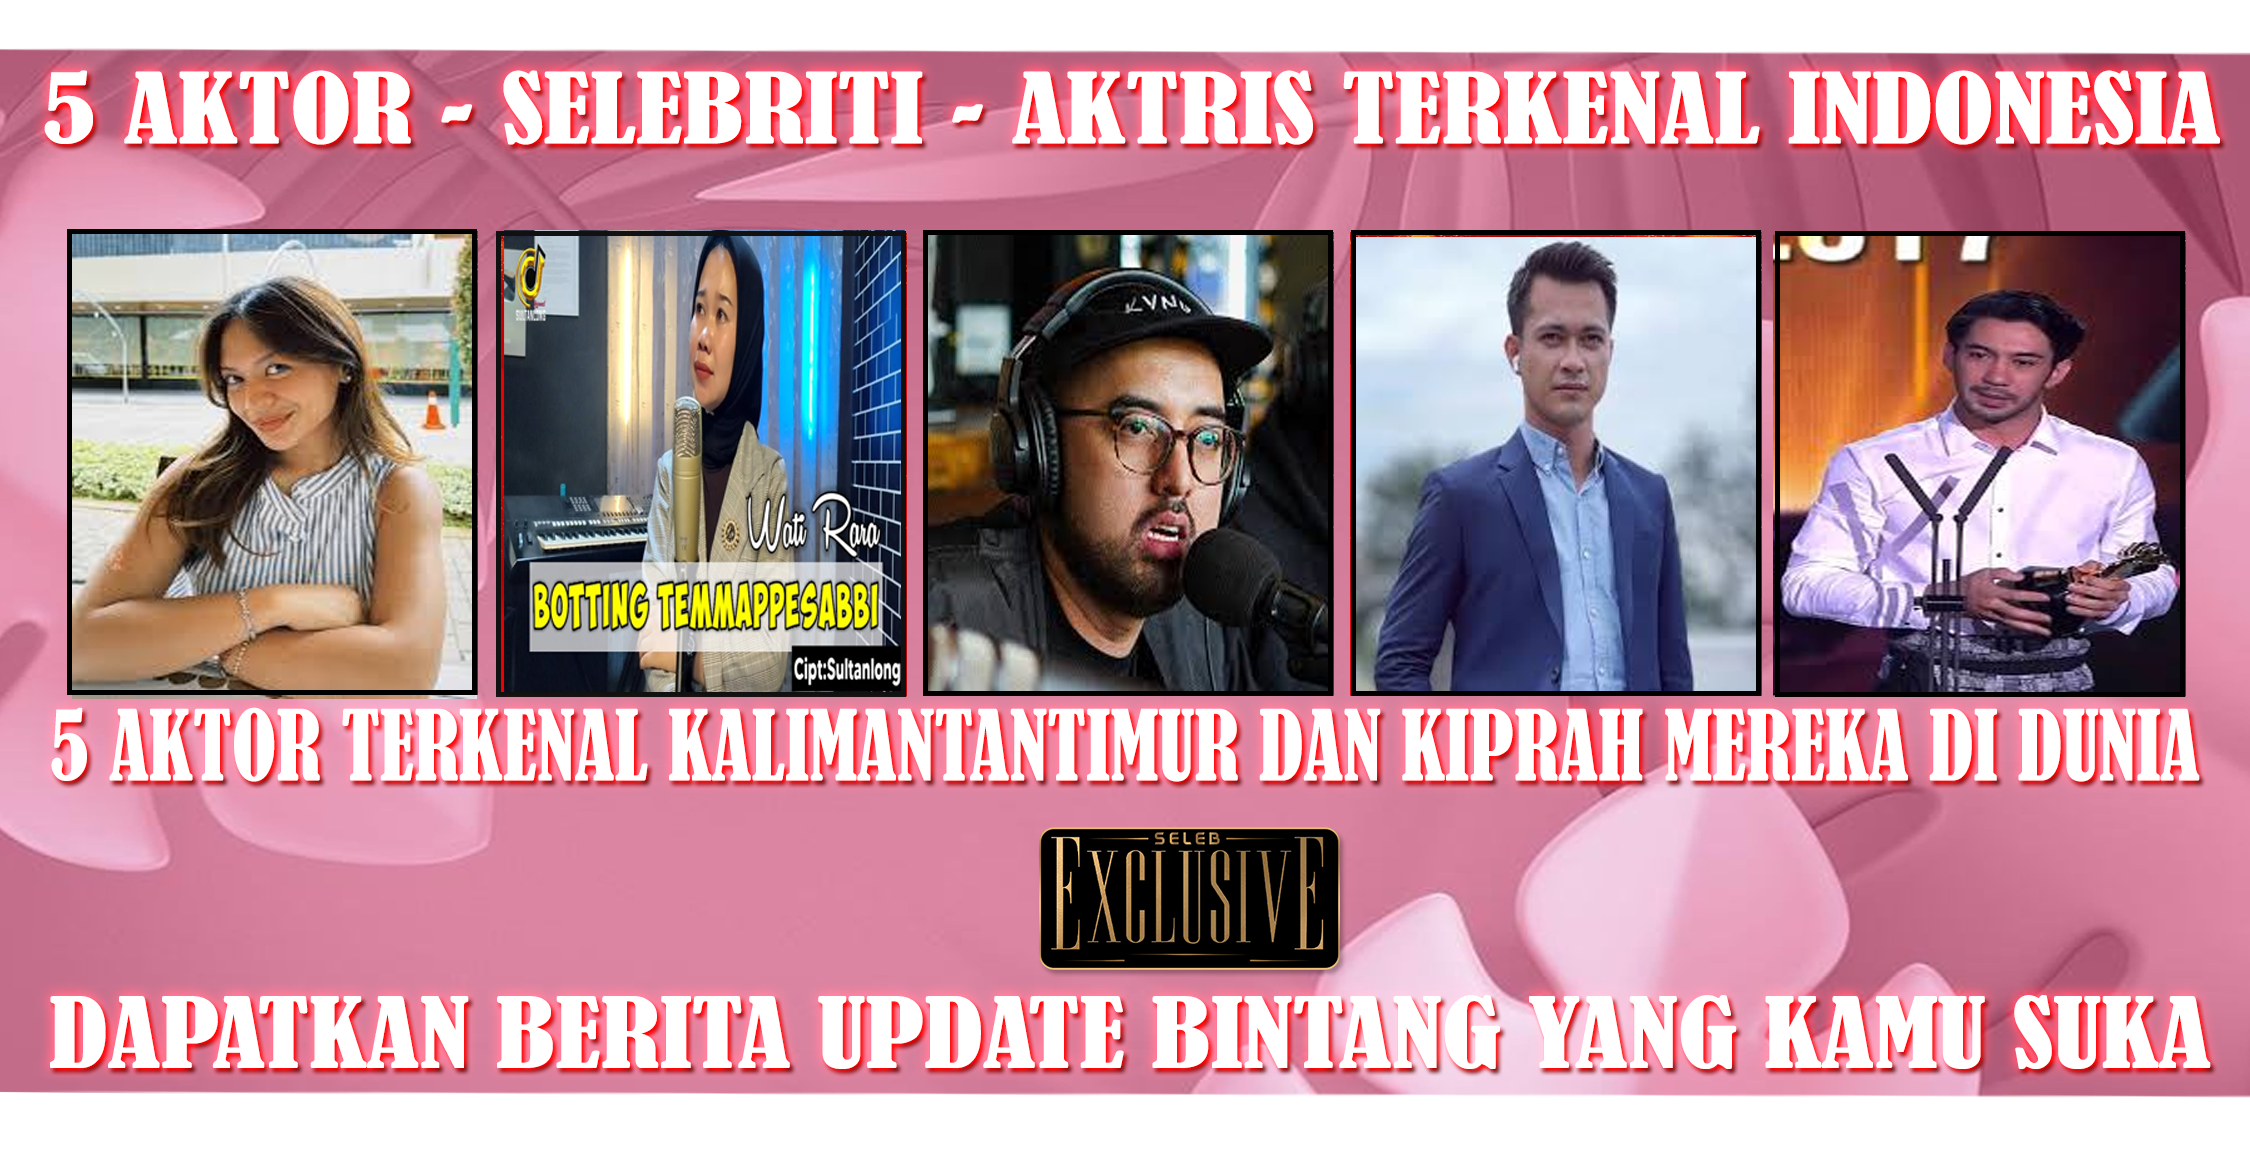 5 Aktor Terkenal KalimantanTimur